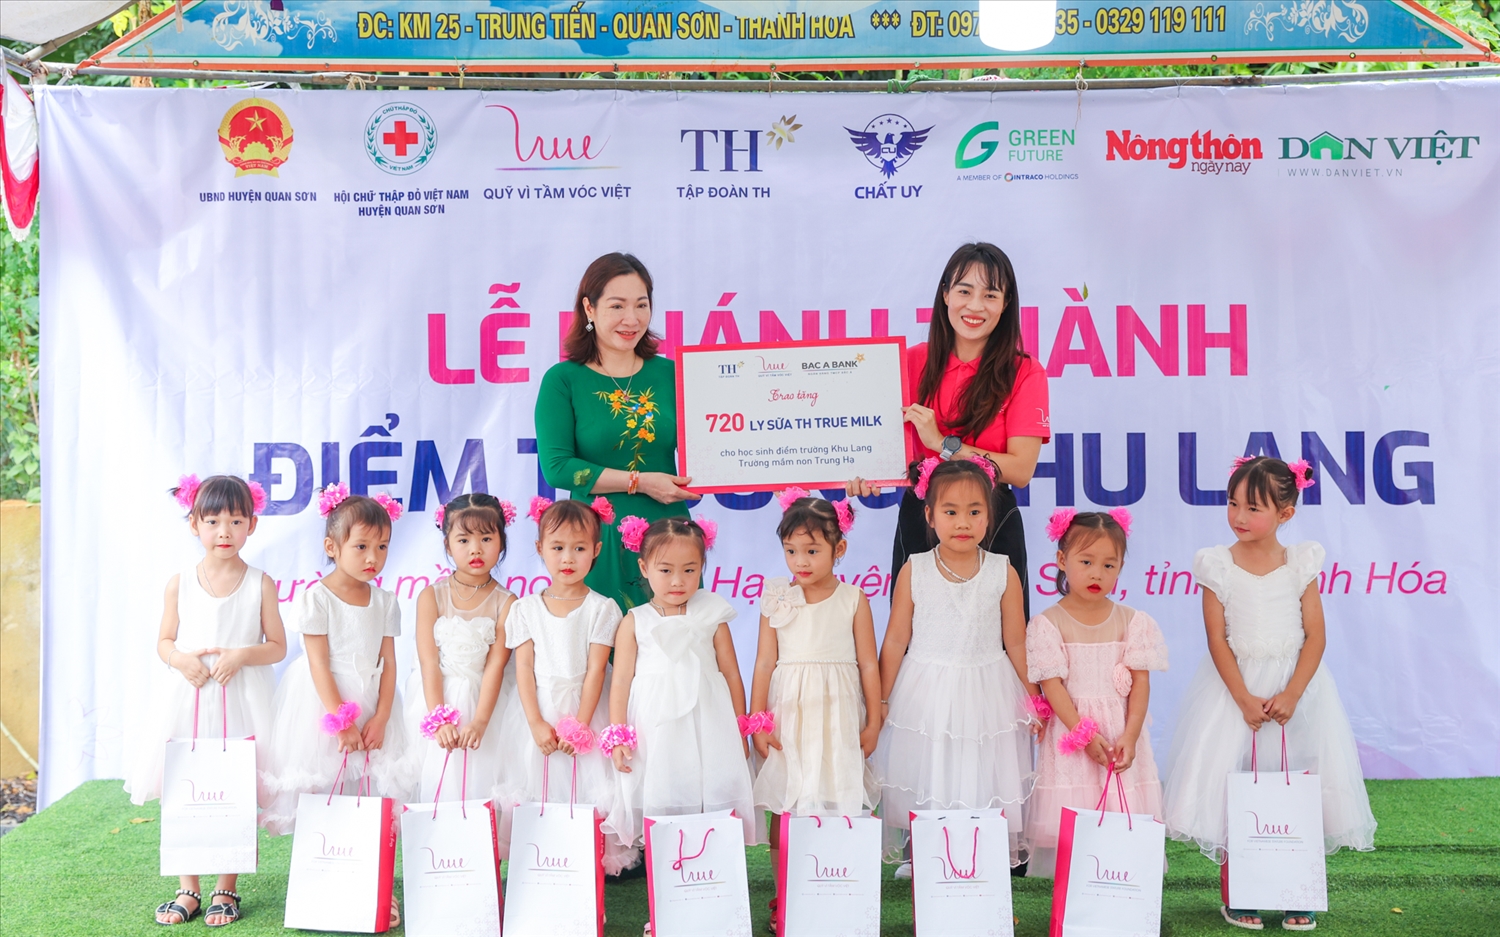 Quỹ Vì Tầm Vóc Việt xây ngôi trường xanh - giáo dục lối sống xanh 6